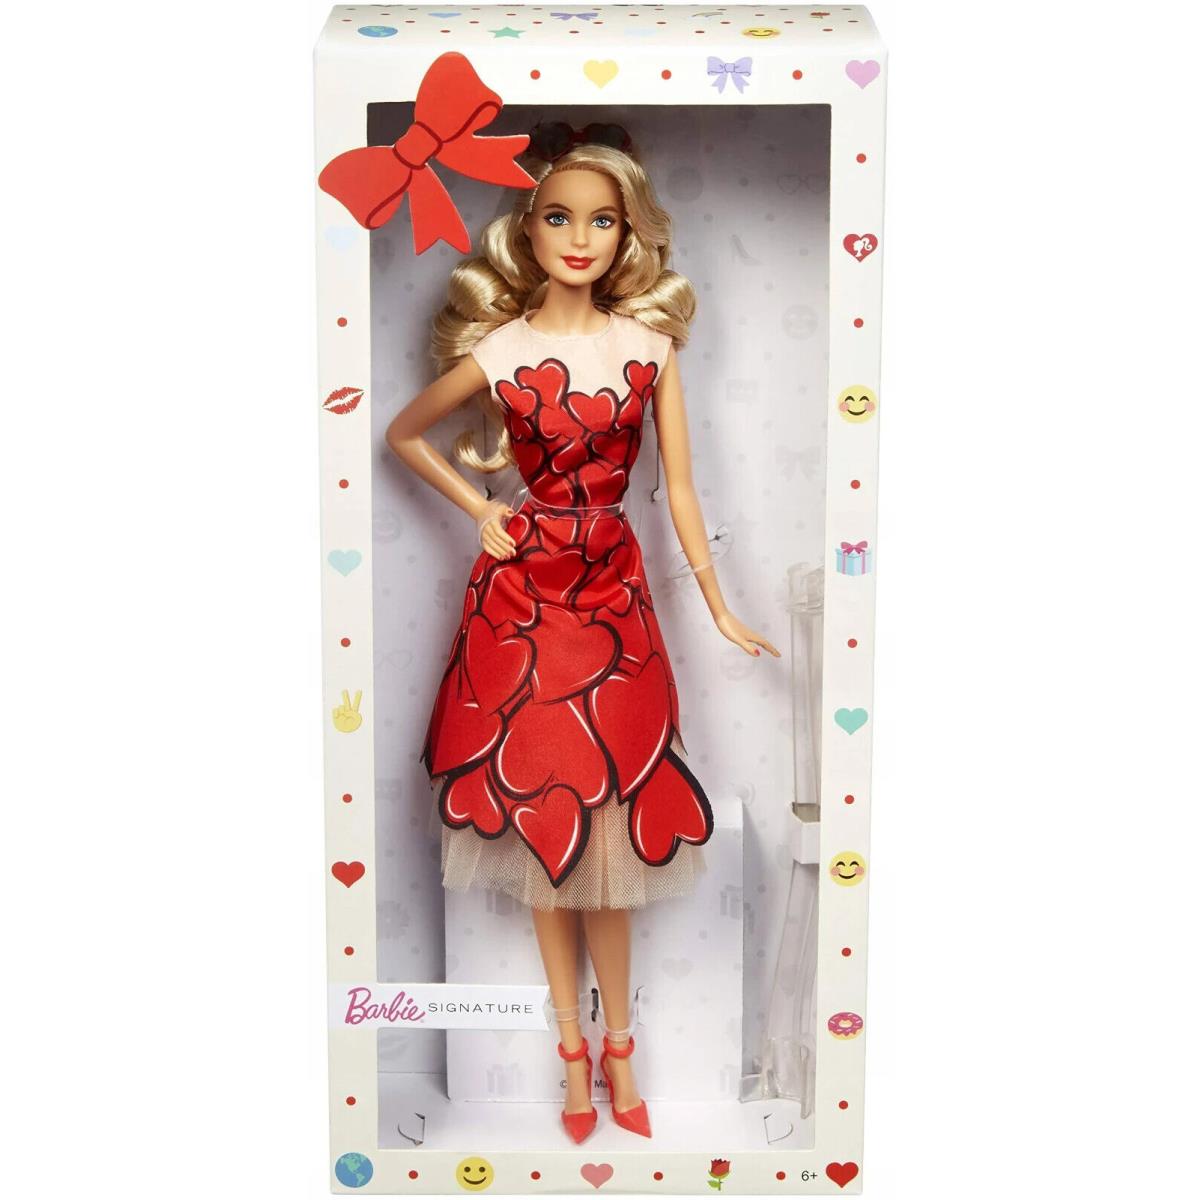 Barbie Celebration Doll Beautiful Blonde W/red Dress W/icon Stickers